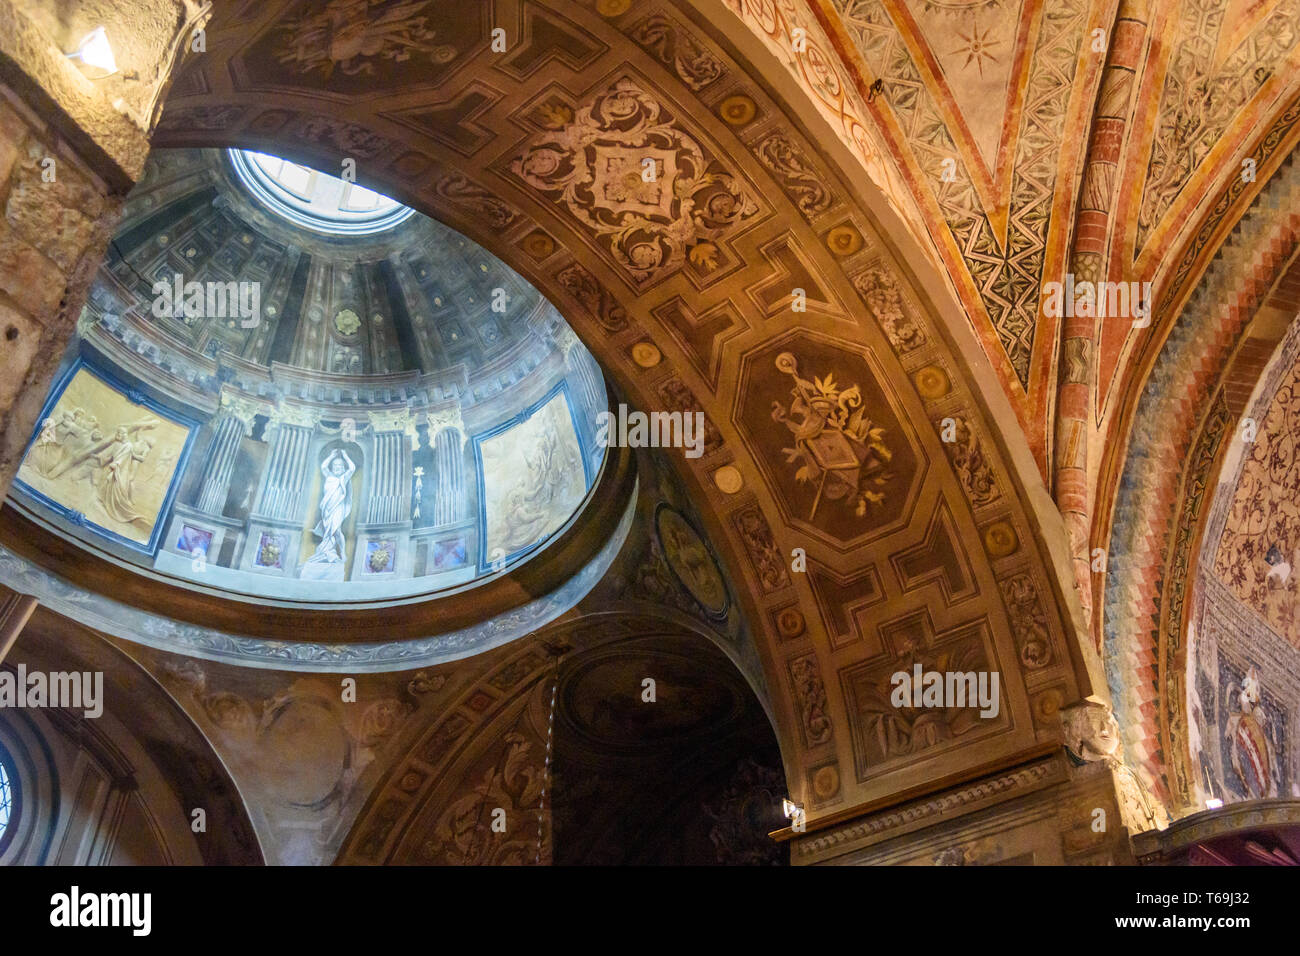 Brescia, Italia - 21 de octubre de 2018: Interior del Duomo Vecchio o Catedral Vieja, Concattedrale invernale di Santa Maria Assunta Foto de stock